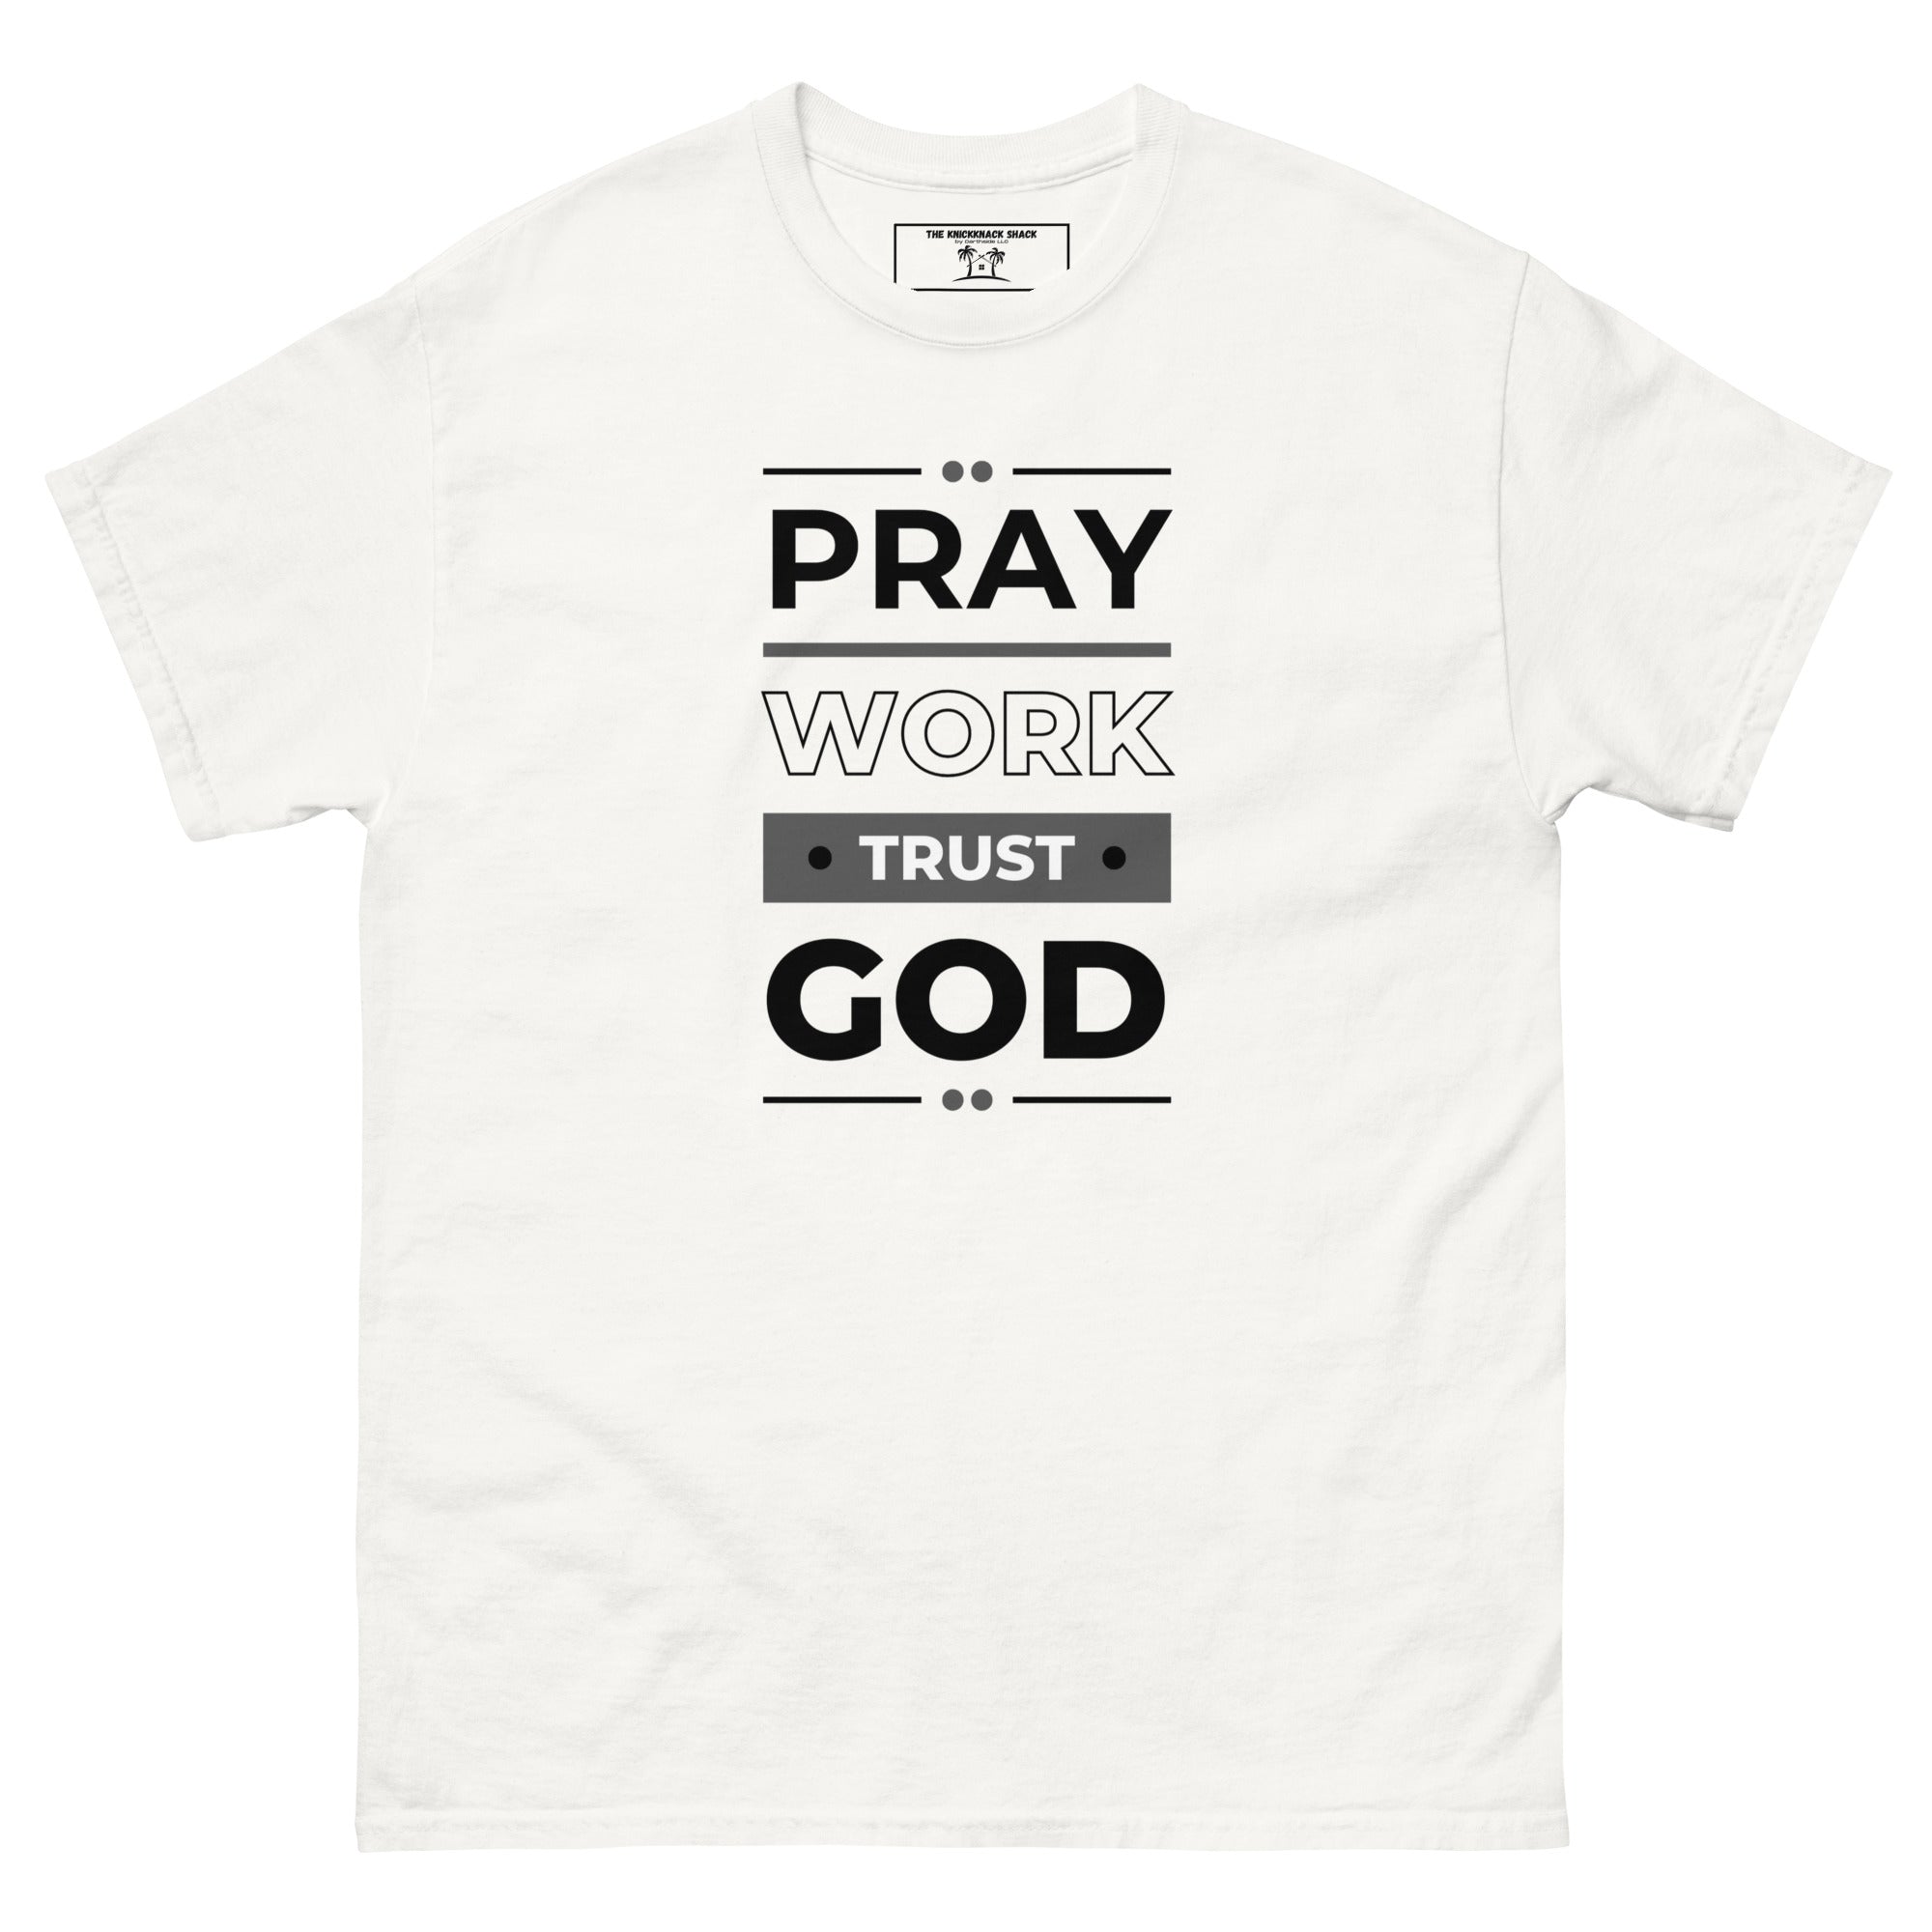 Camiseta clásica - Ora, trabaja, confía en Dios (colores claros)